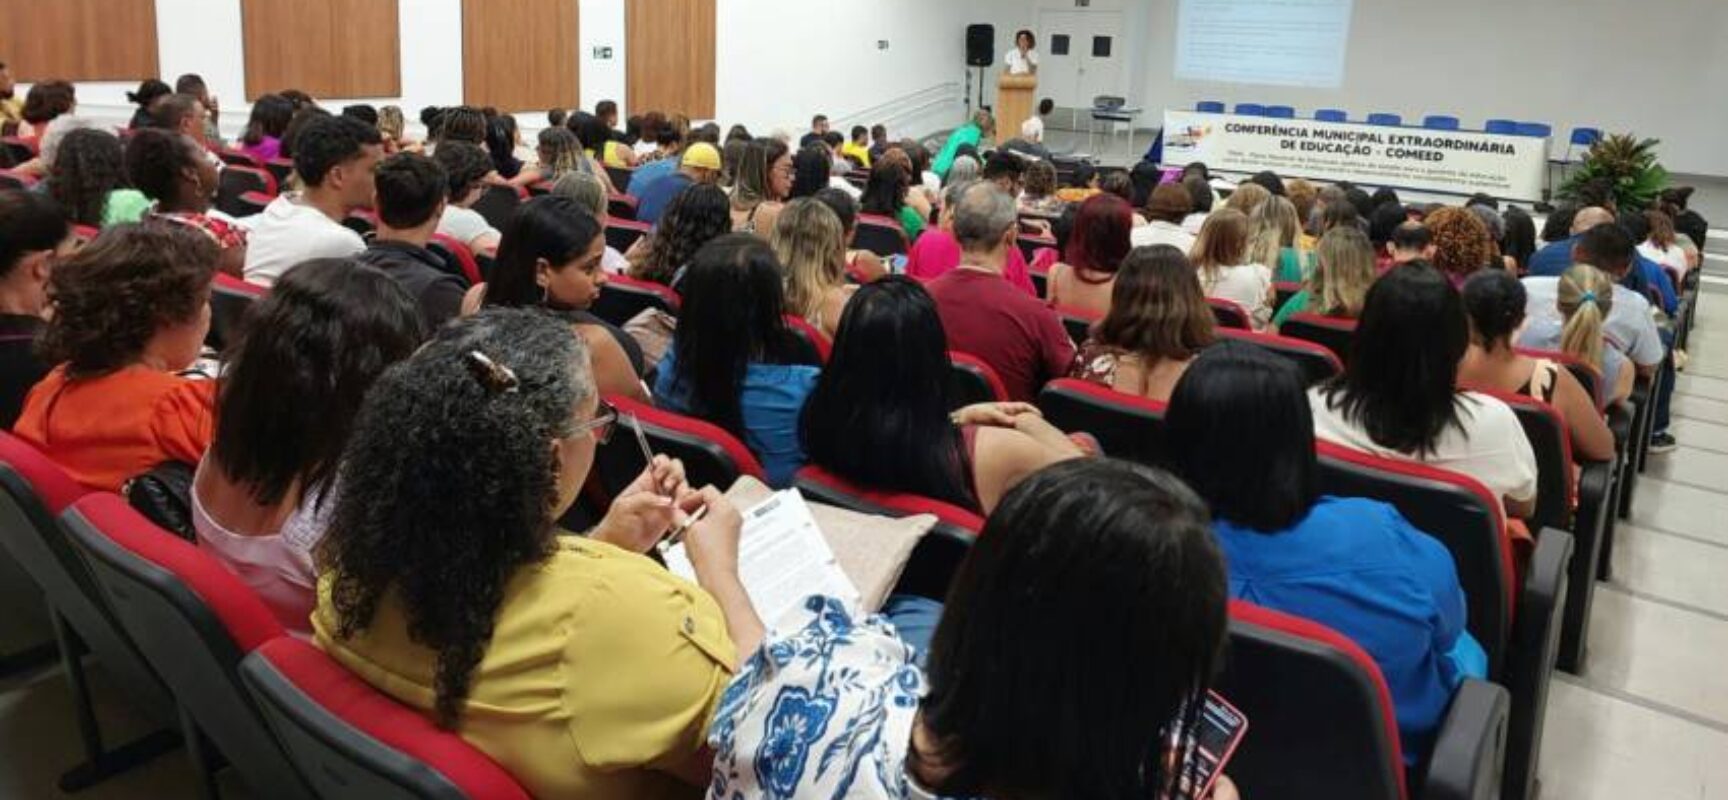 Conferência da Educação em Itabuna reuniu dirigentes, professores e sociedade civil